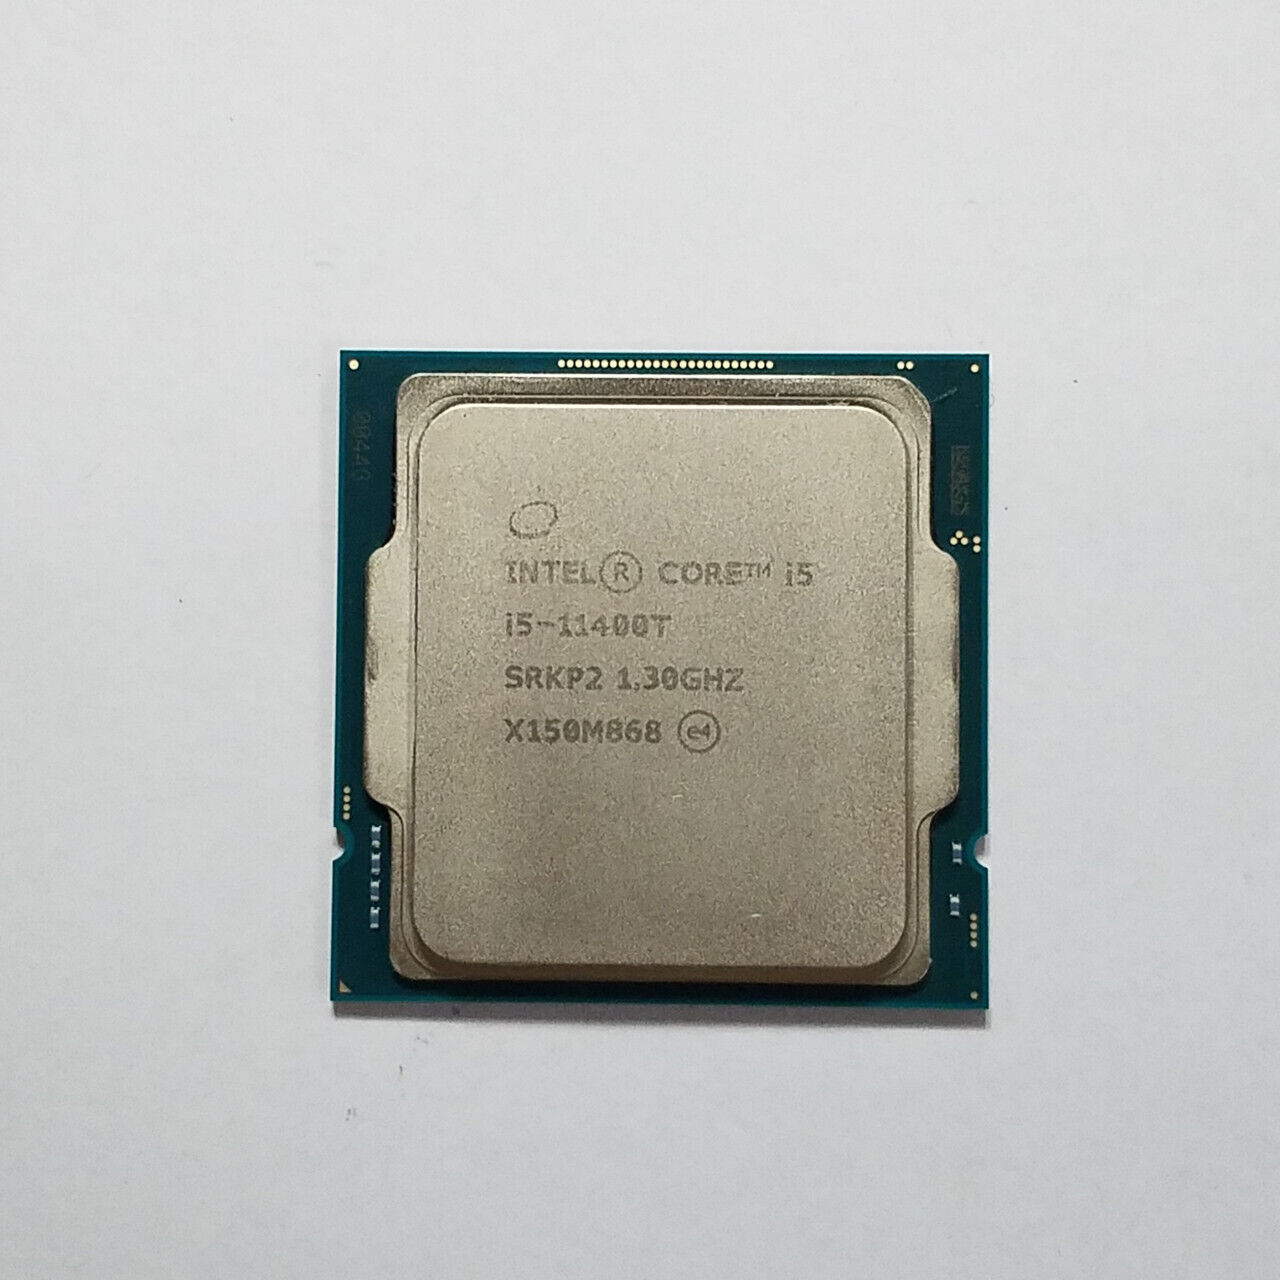 Intel Core i5-11400T SRKP2 1.3GHz Processor | Grade A